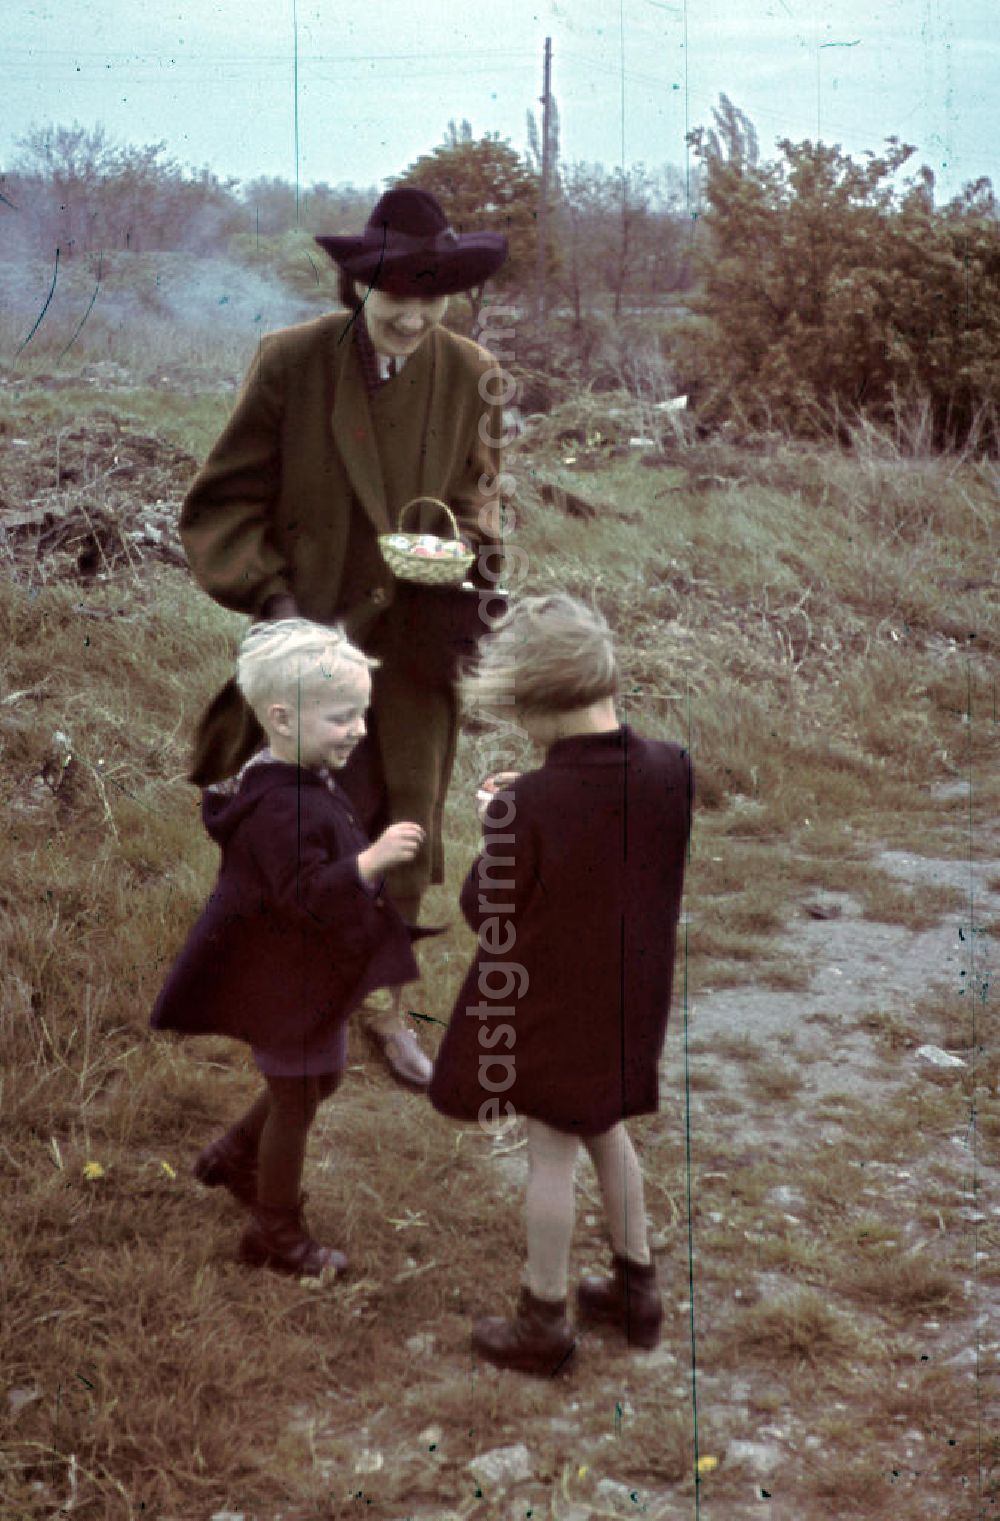 GDR photo archive: Merseburg - Kinder sammeln Ostereier auf einer Wiese zu Ostern in Mersburg. Children at Easter egg hunt.